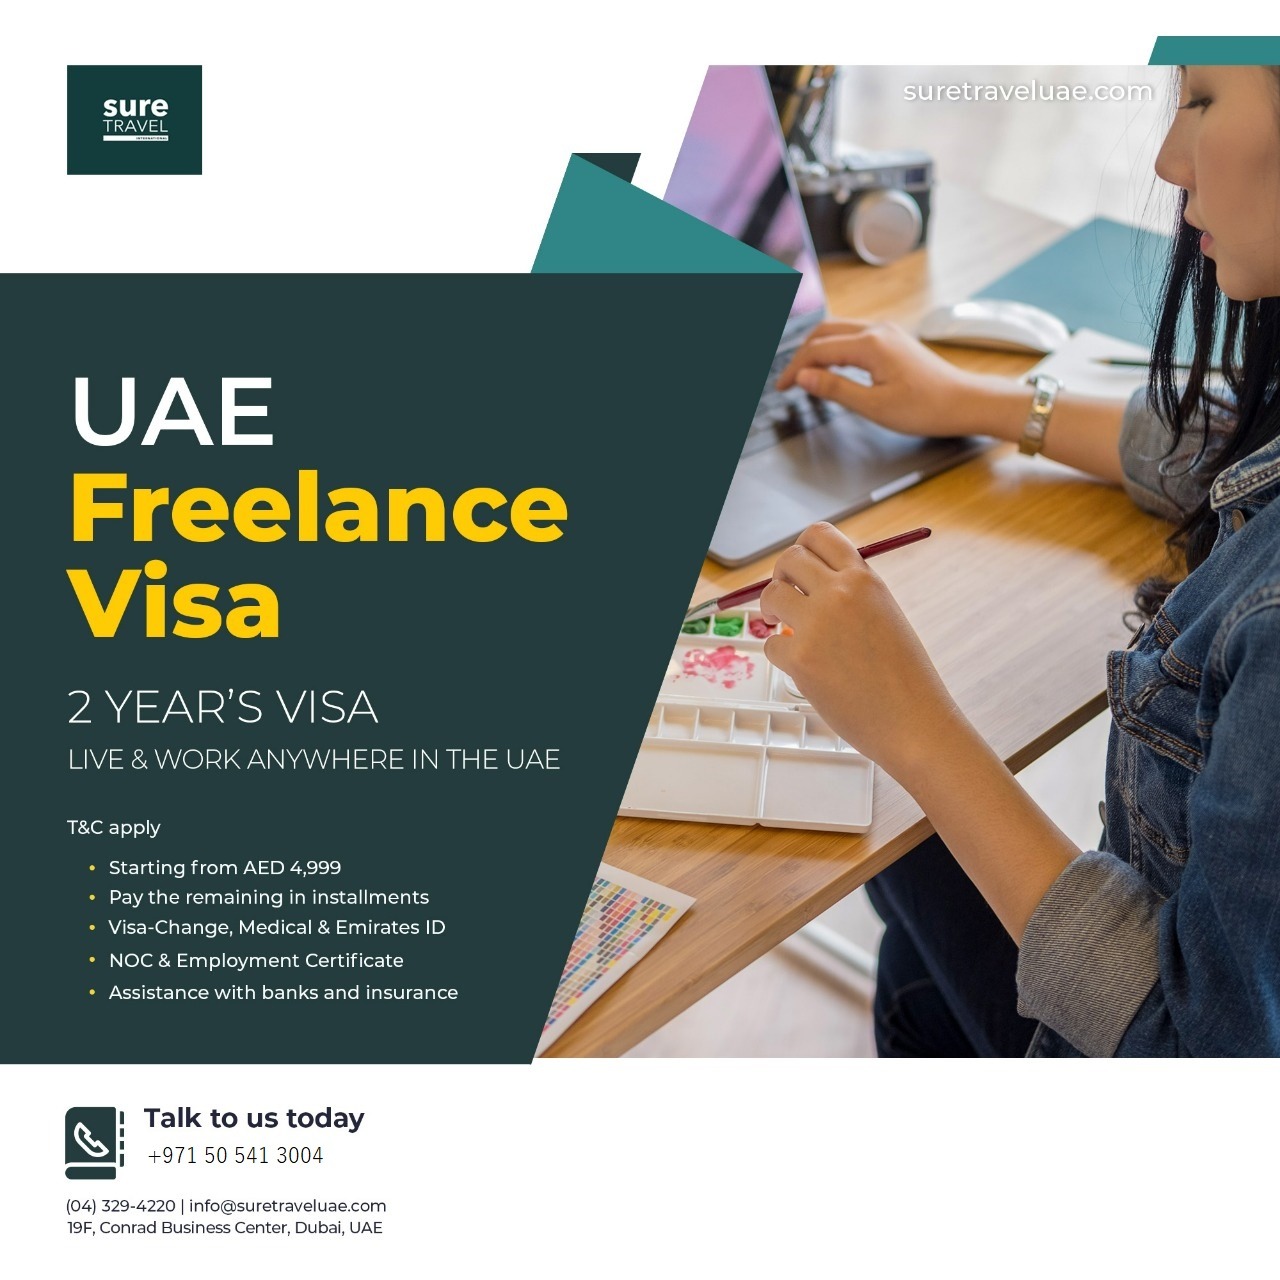 2 YEAR’S UAE FREELANCE VISA